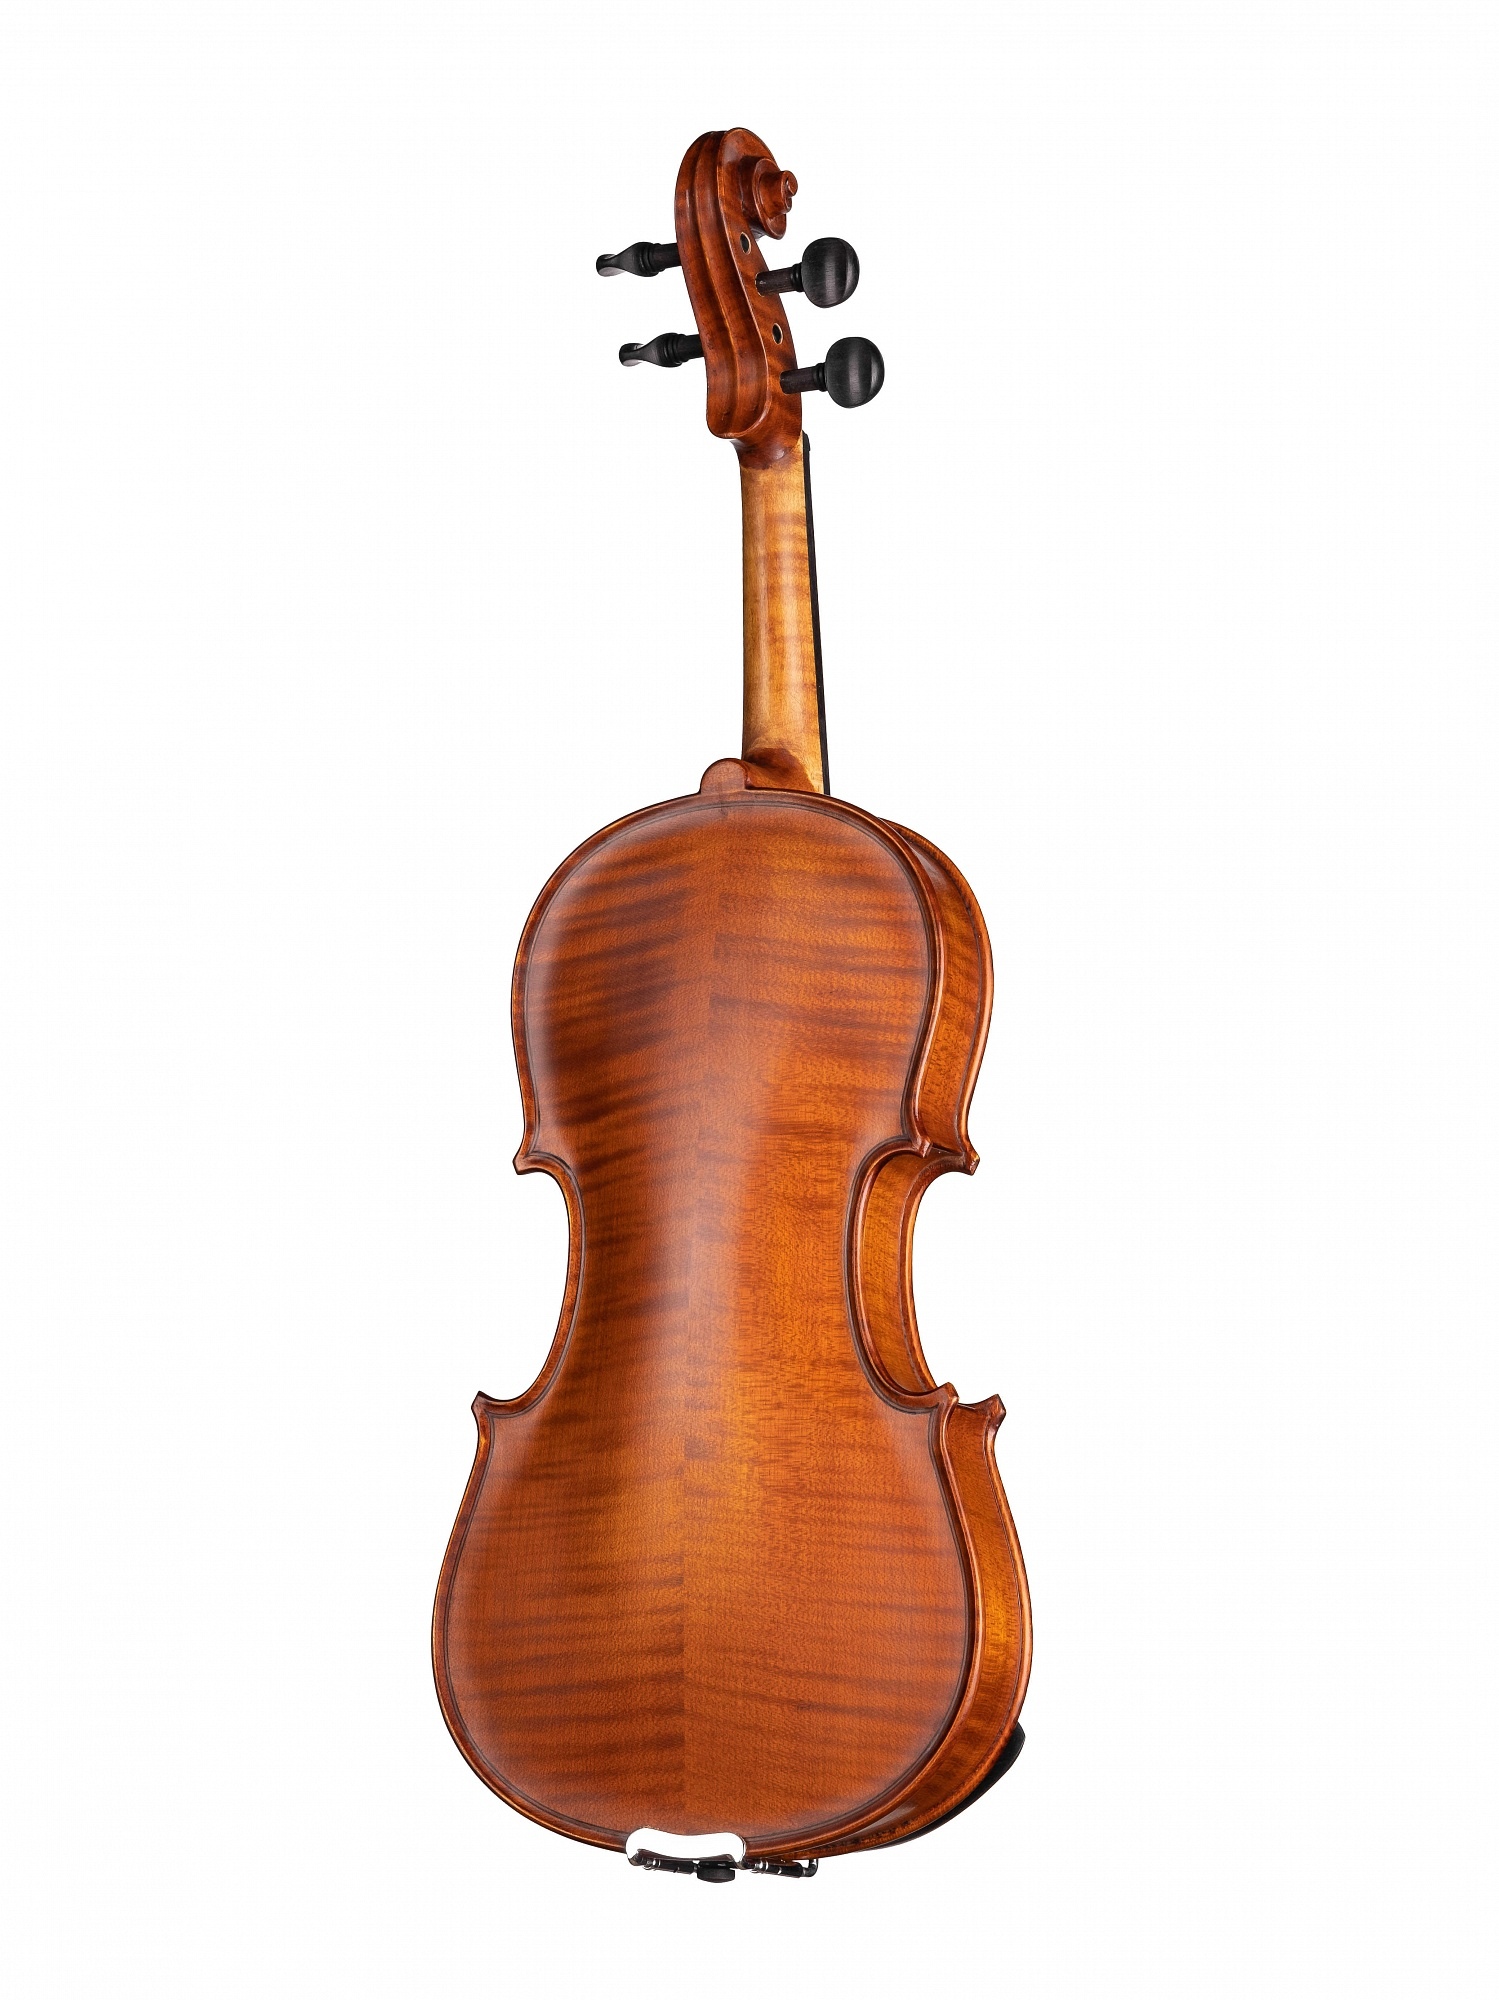 Скрипка Gliga Gems1 AW-V034